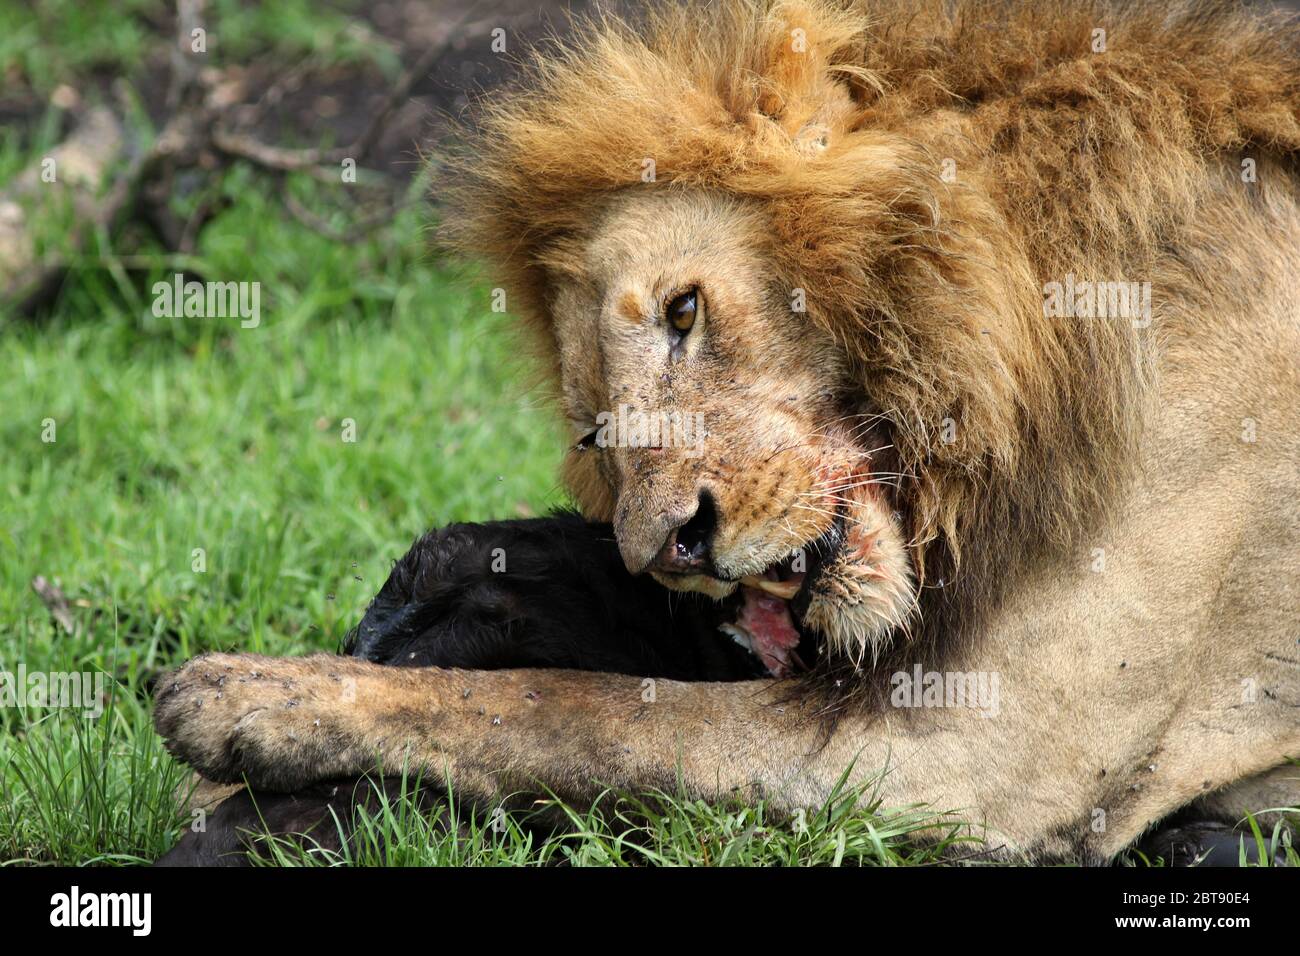 un grand lion mâle avec une bouche tachée de sang mange la proie fraîchement déchirée d'un veau de buffle, gros plan Banque D'Images